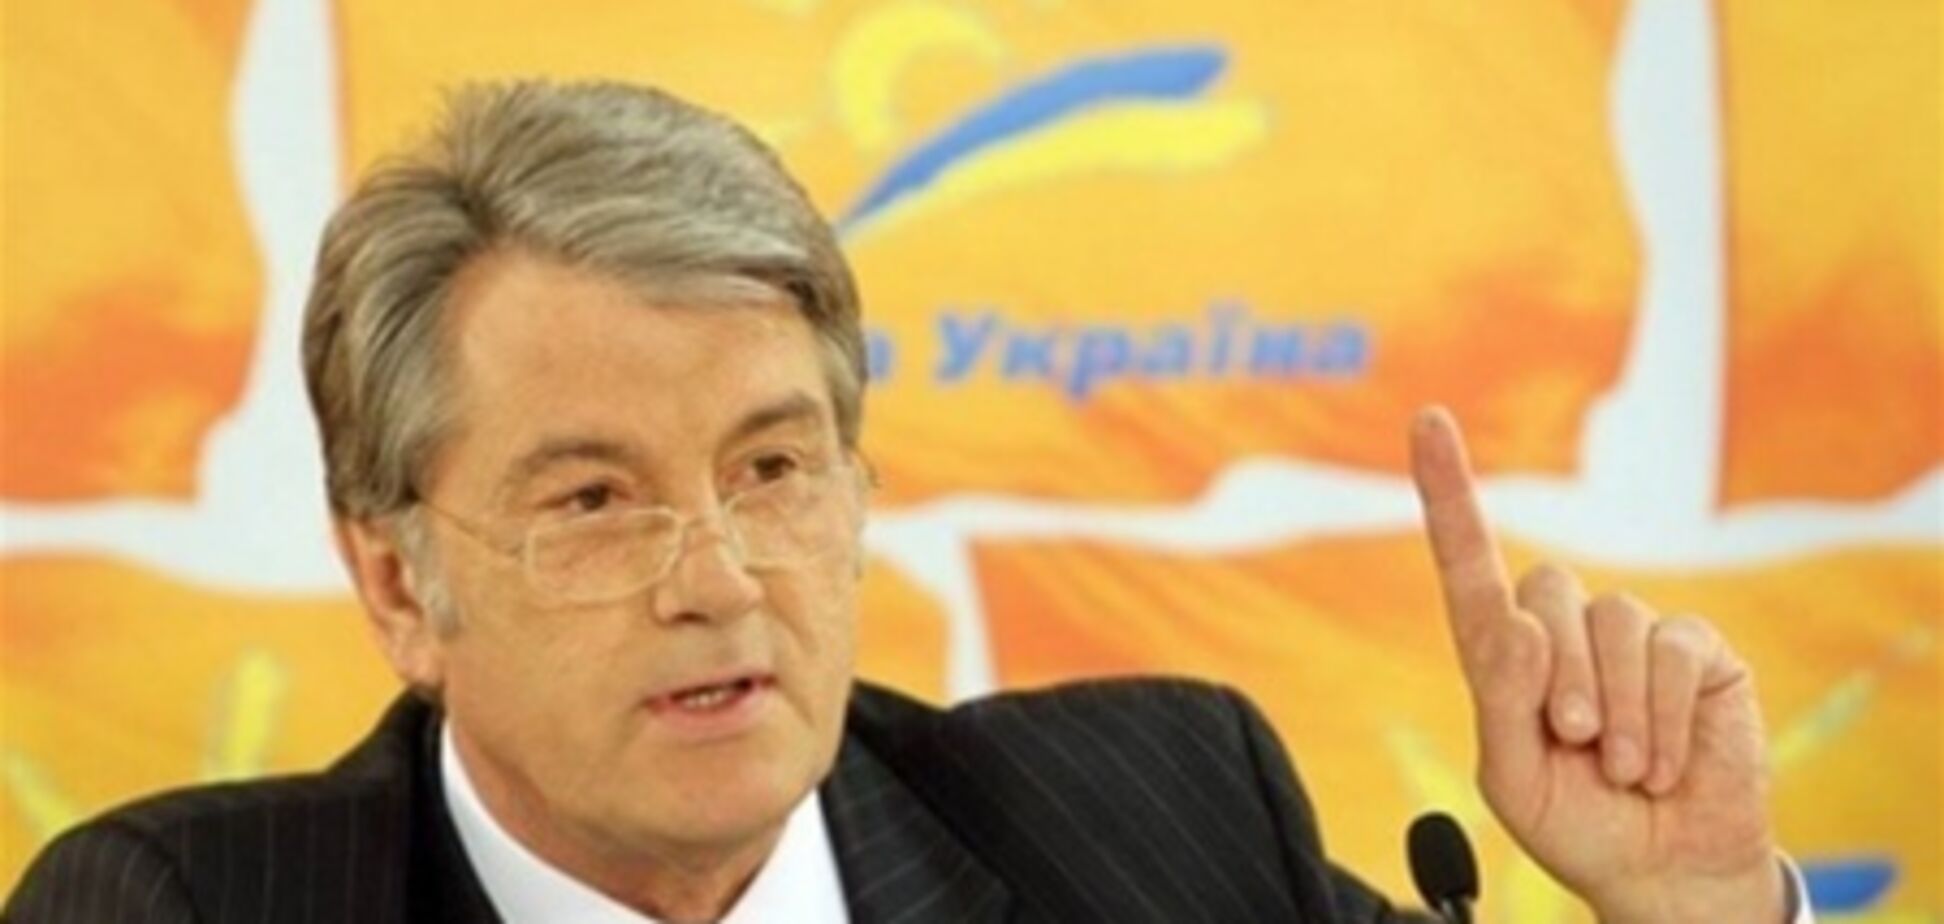 14 облорганизаций НУ выступили против Ющенко